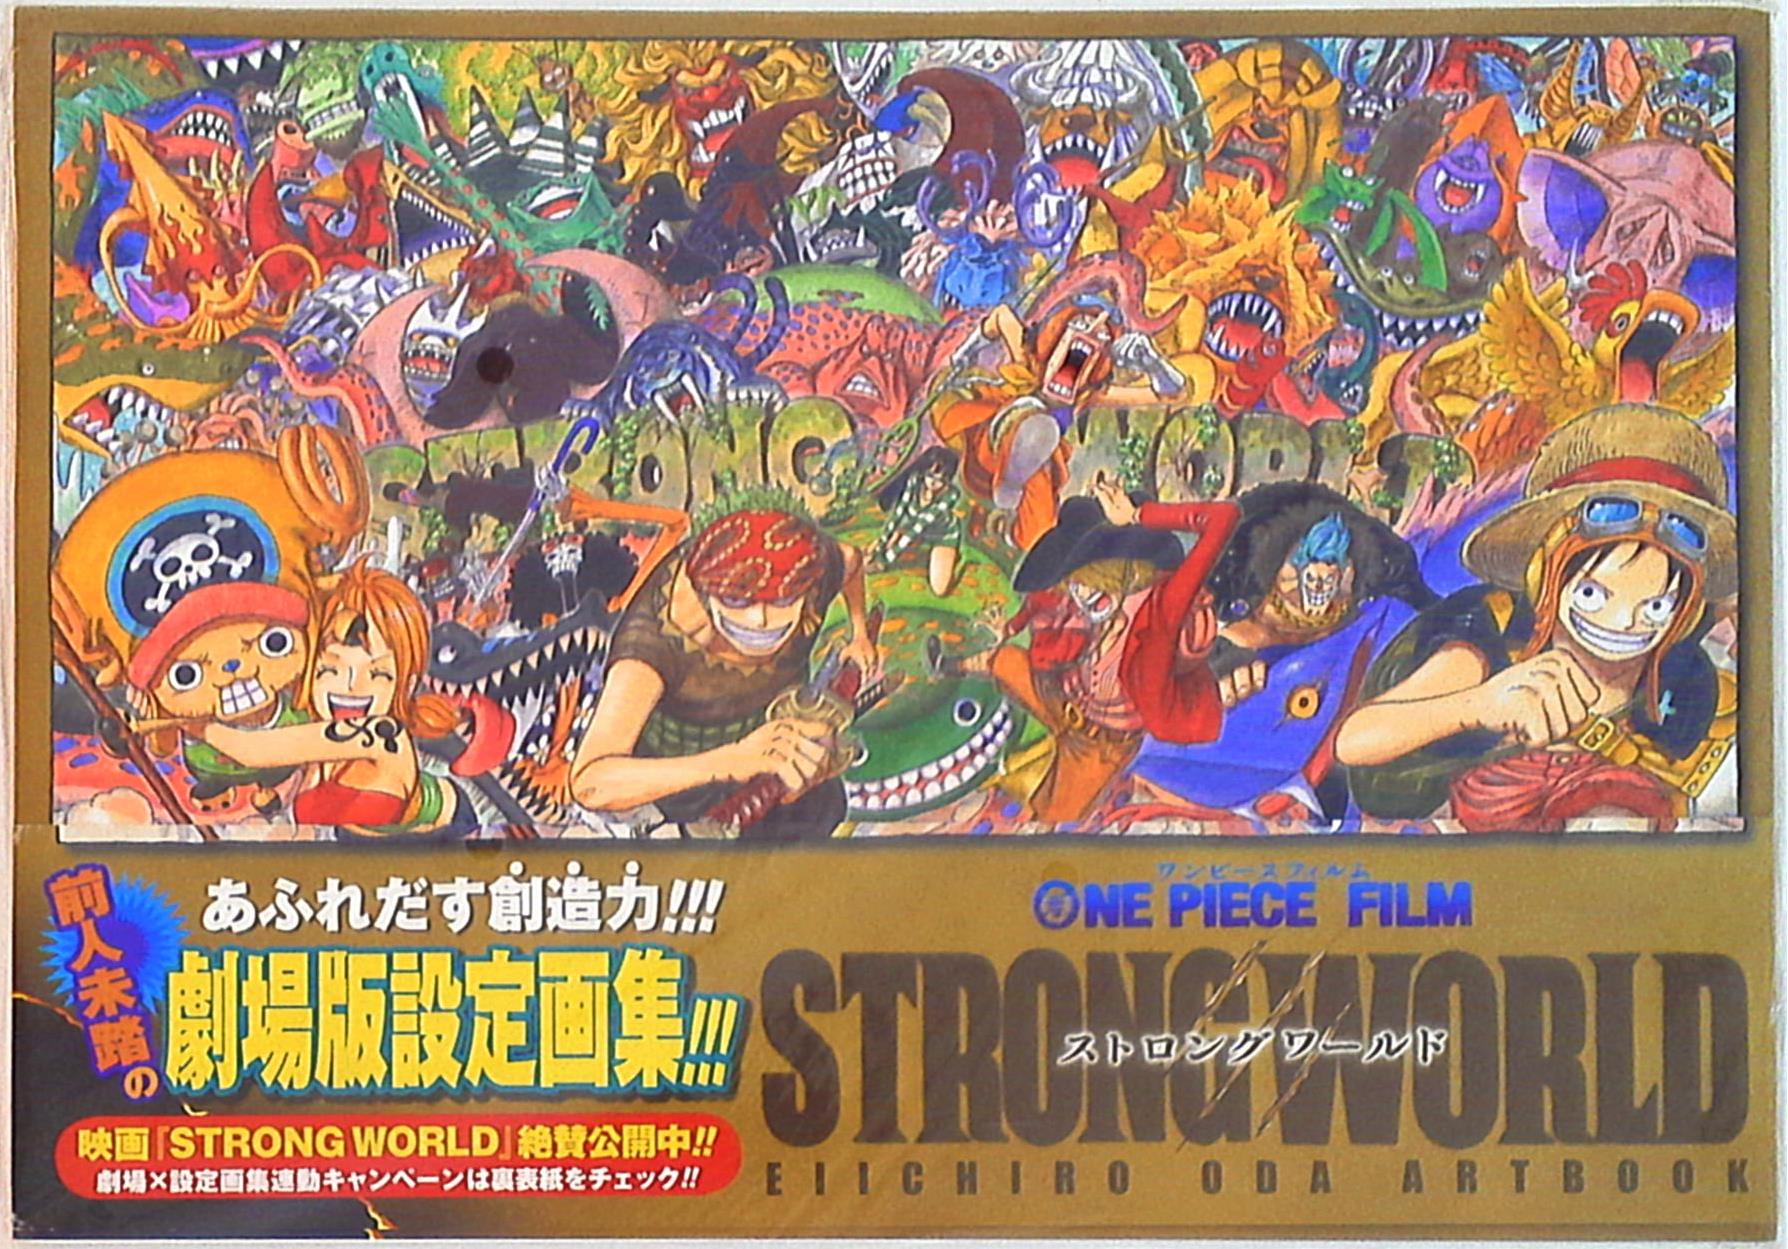 集英社 愛蔵版コミックス 尾田栄一郎 One Piece Film Strong World Eiichiro Oda Art Book 帯付 まんだらけ Mandarake